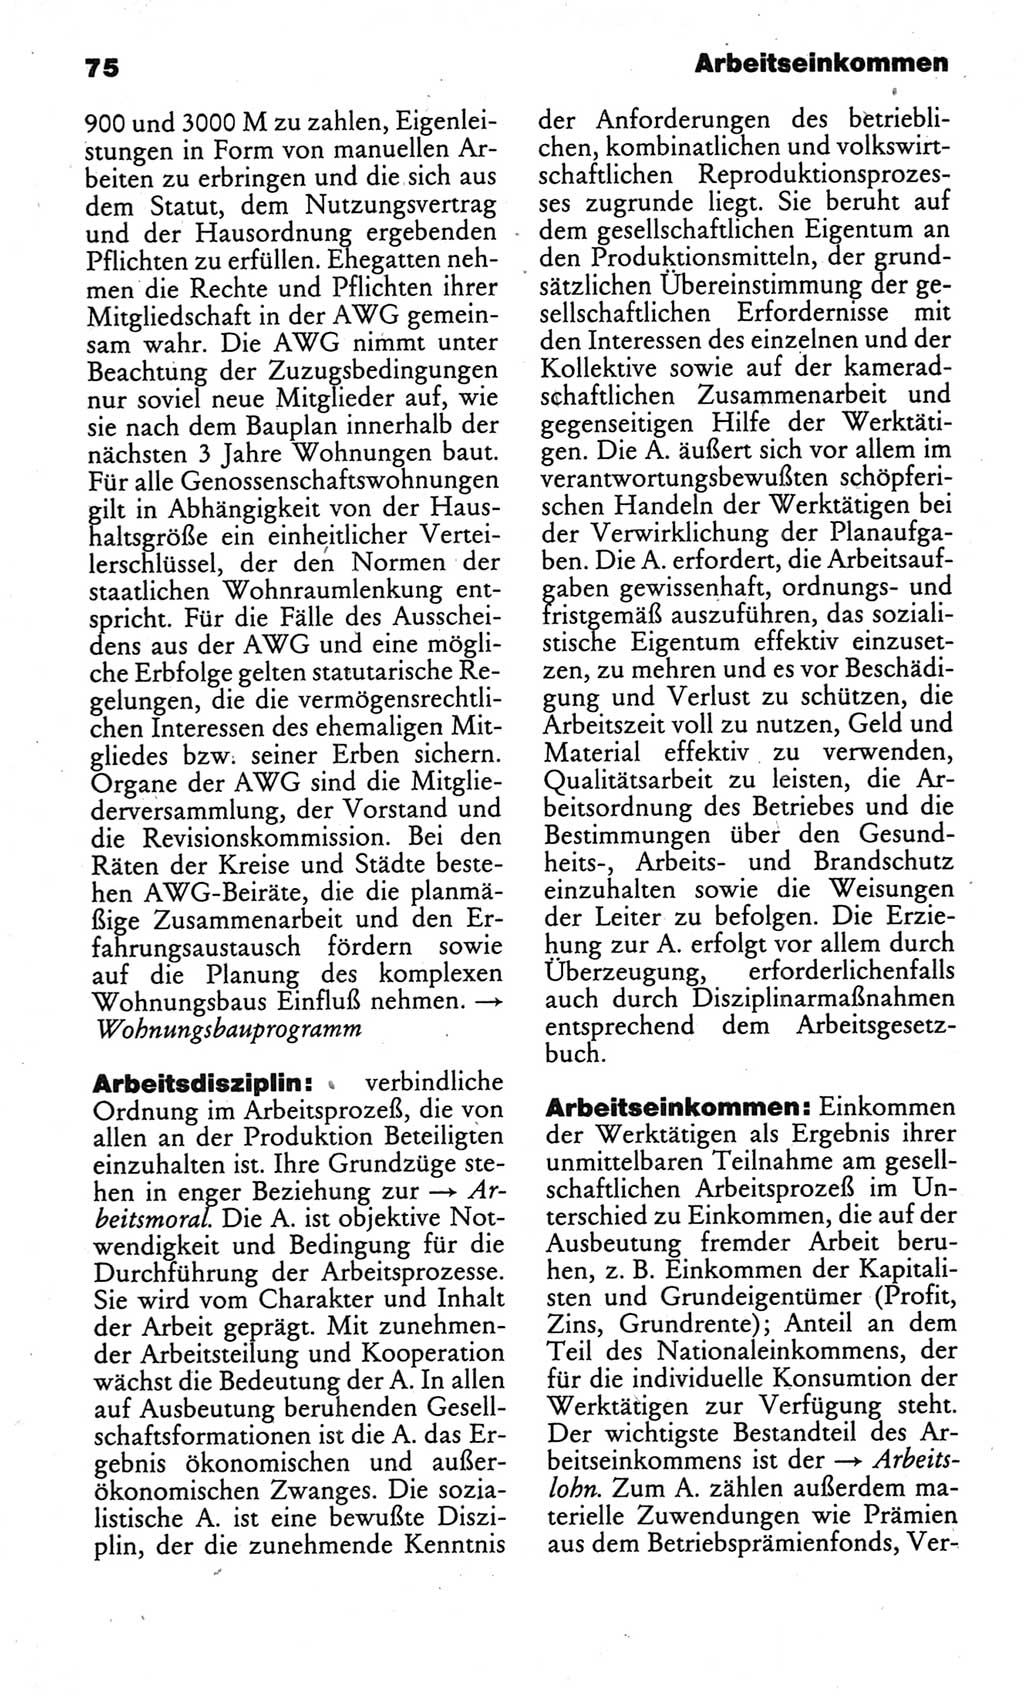 Kleines politisches Wörterbuch [Deutsche Demokratische Republik (DDR)] 1986, Seite 75 (Kl. pol. Wb. DDR 1986, S. 75)